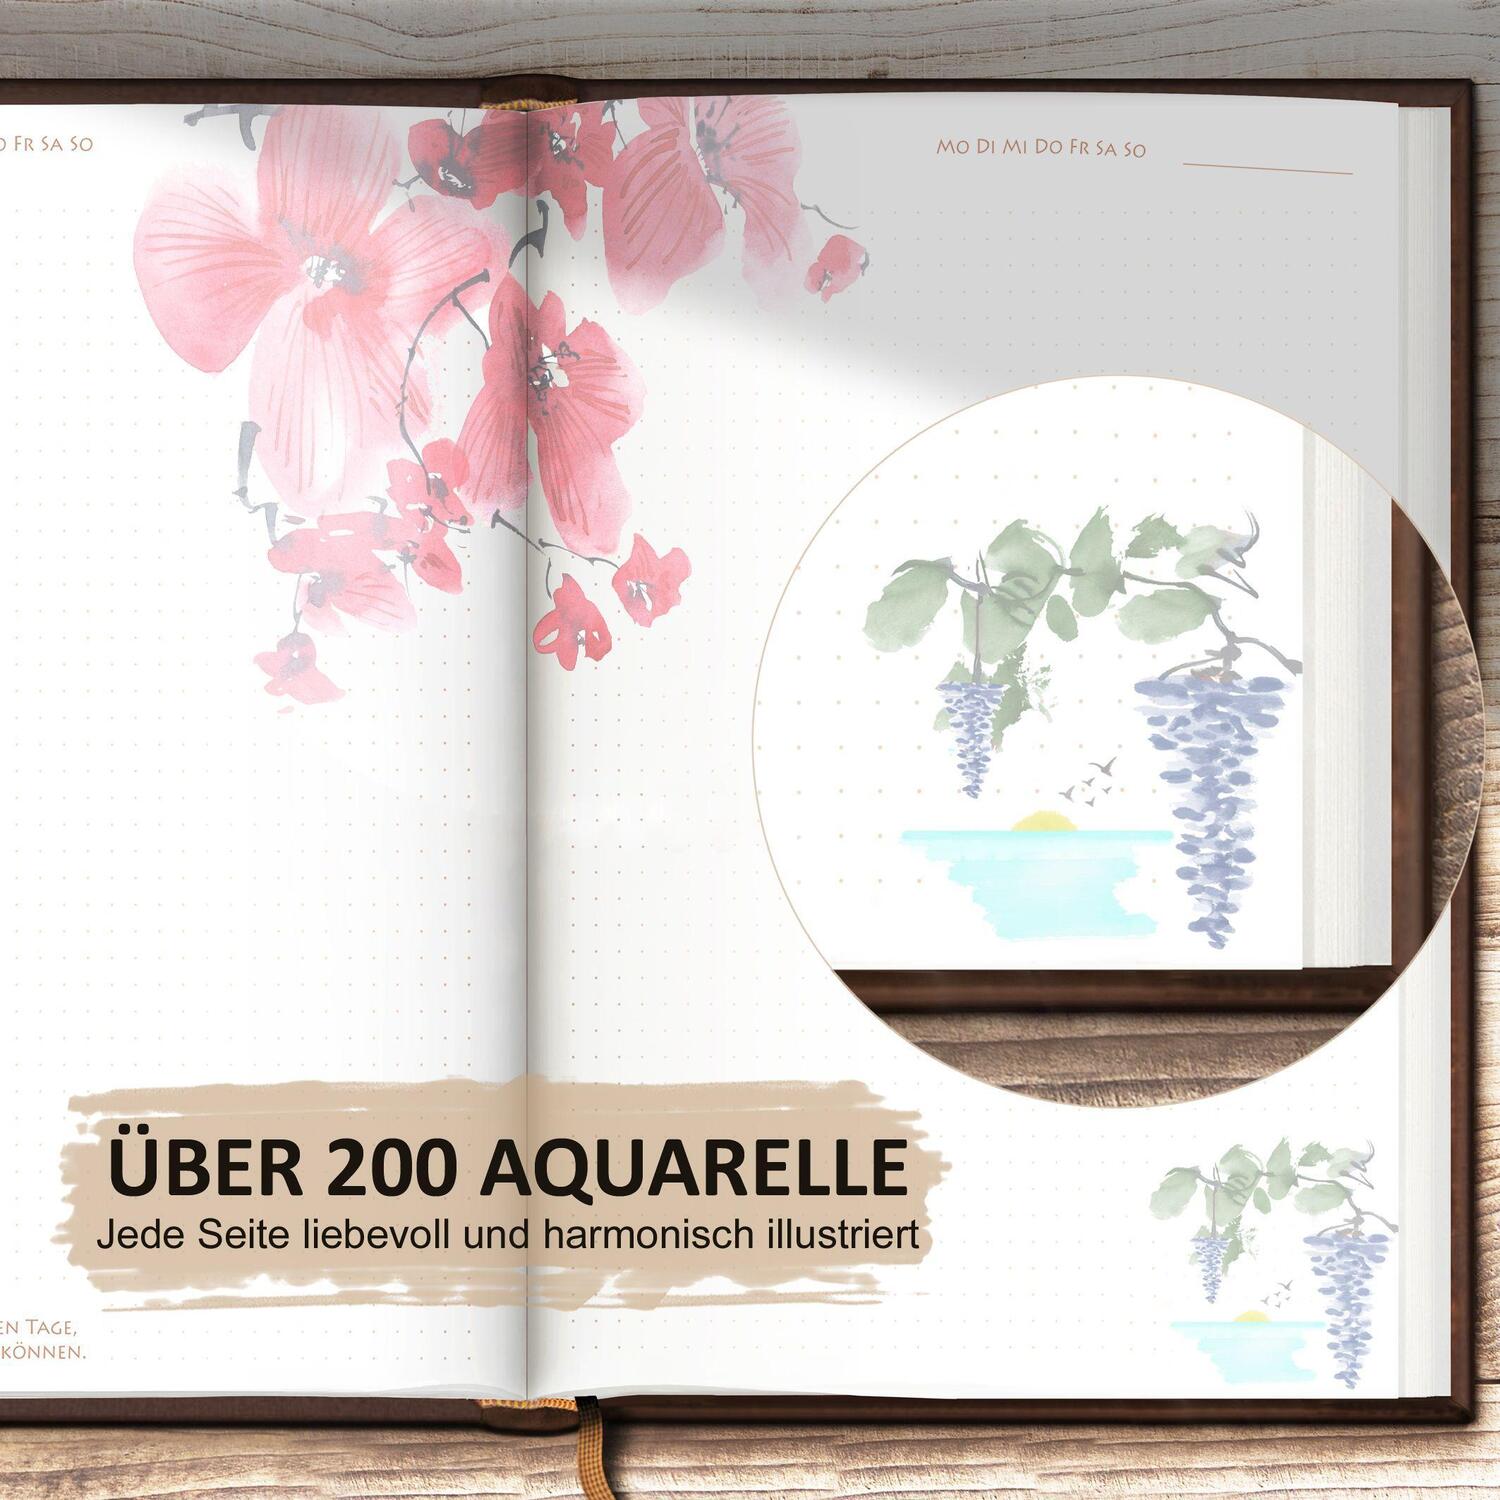 Bild: 9783982303208 | LUCA TAGEBUCH Lebensweisheiten, illustriert mit Aquarellmalerei | Buch